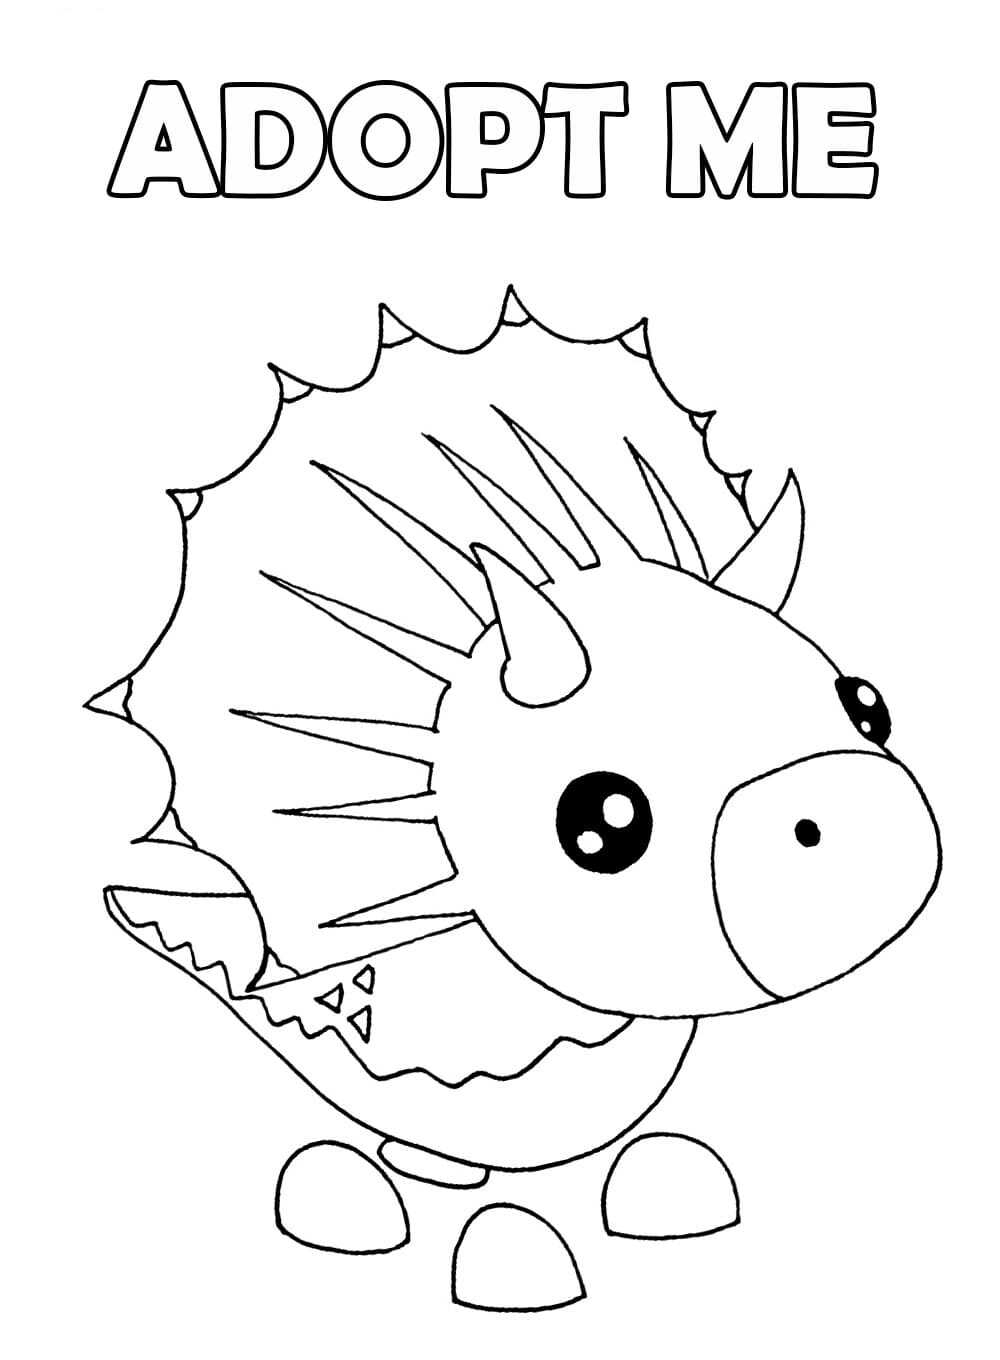 Il Triceratops presenta un animale domestico dinosauro con tre corna bianche sulla testa e sul muso nei videogiochi Adopt me di Adopt me